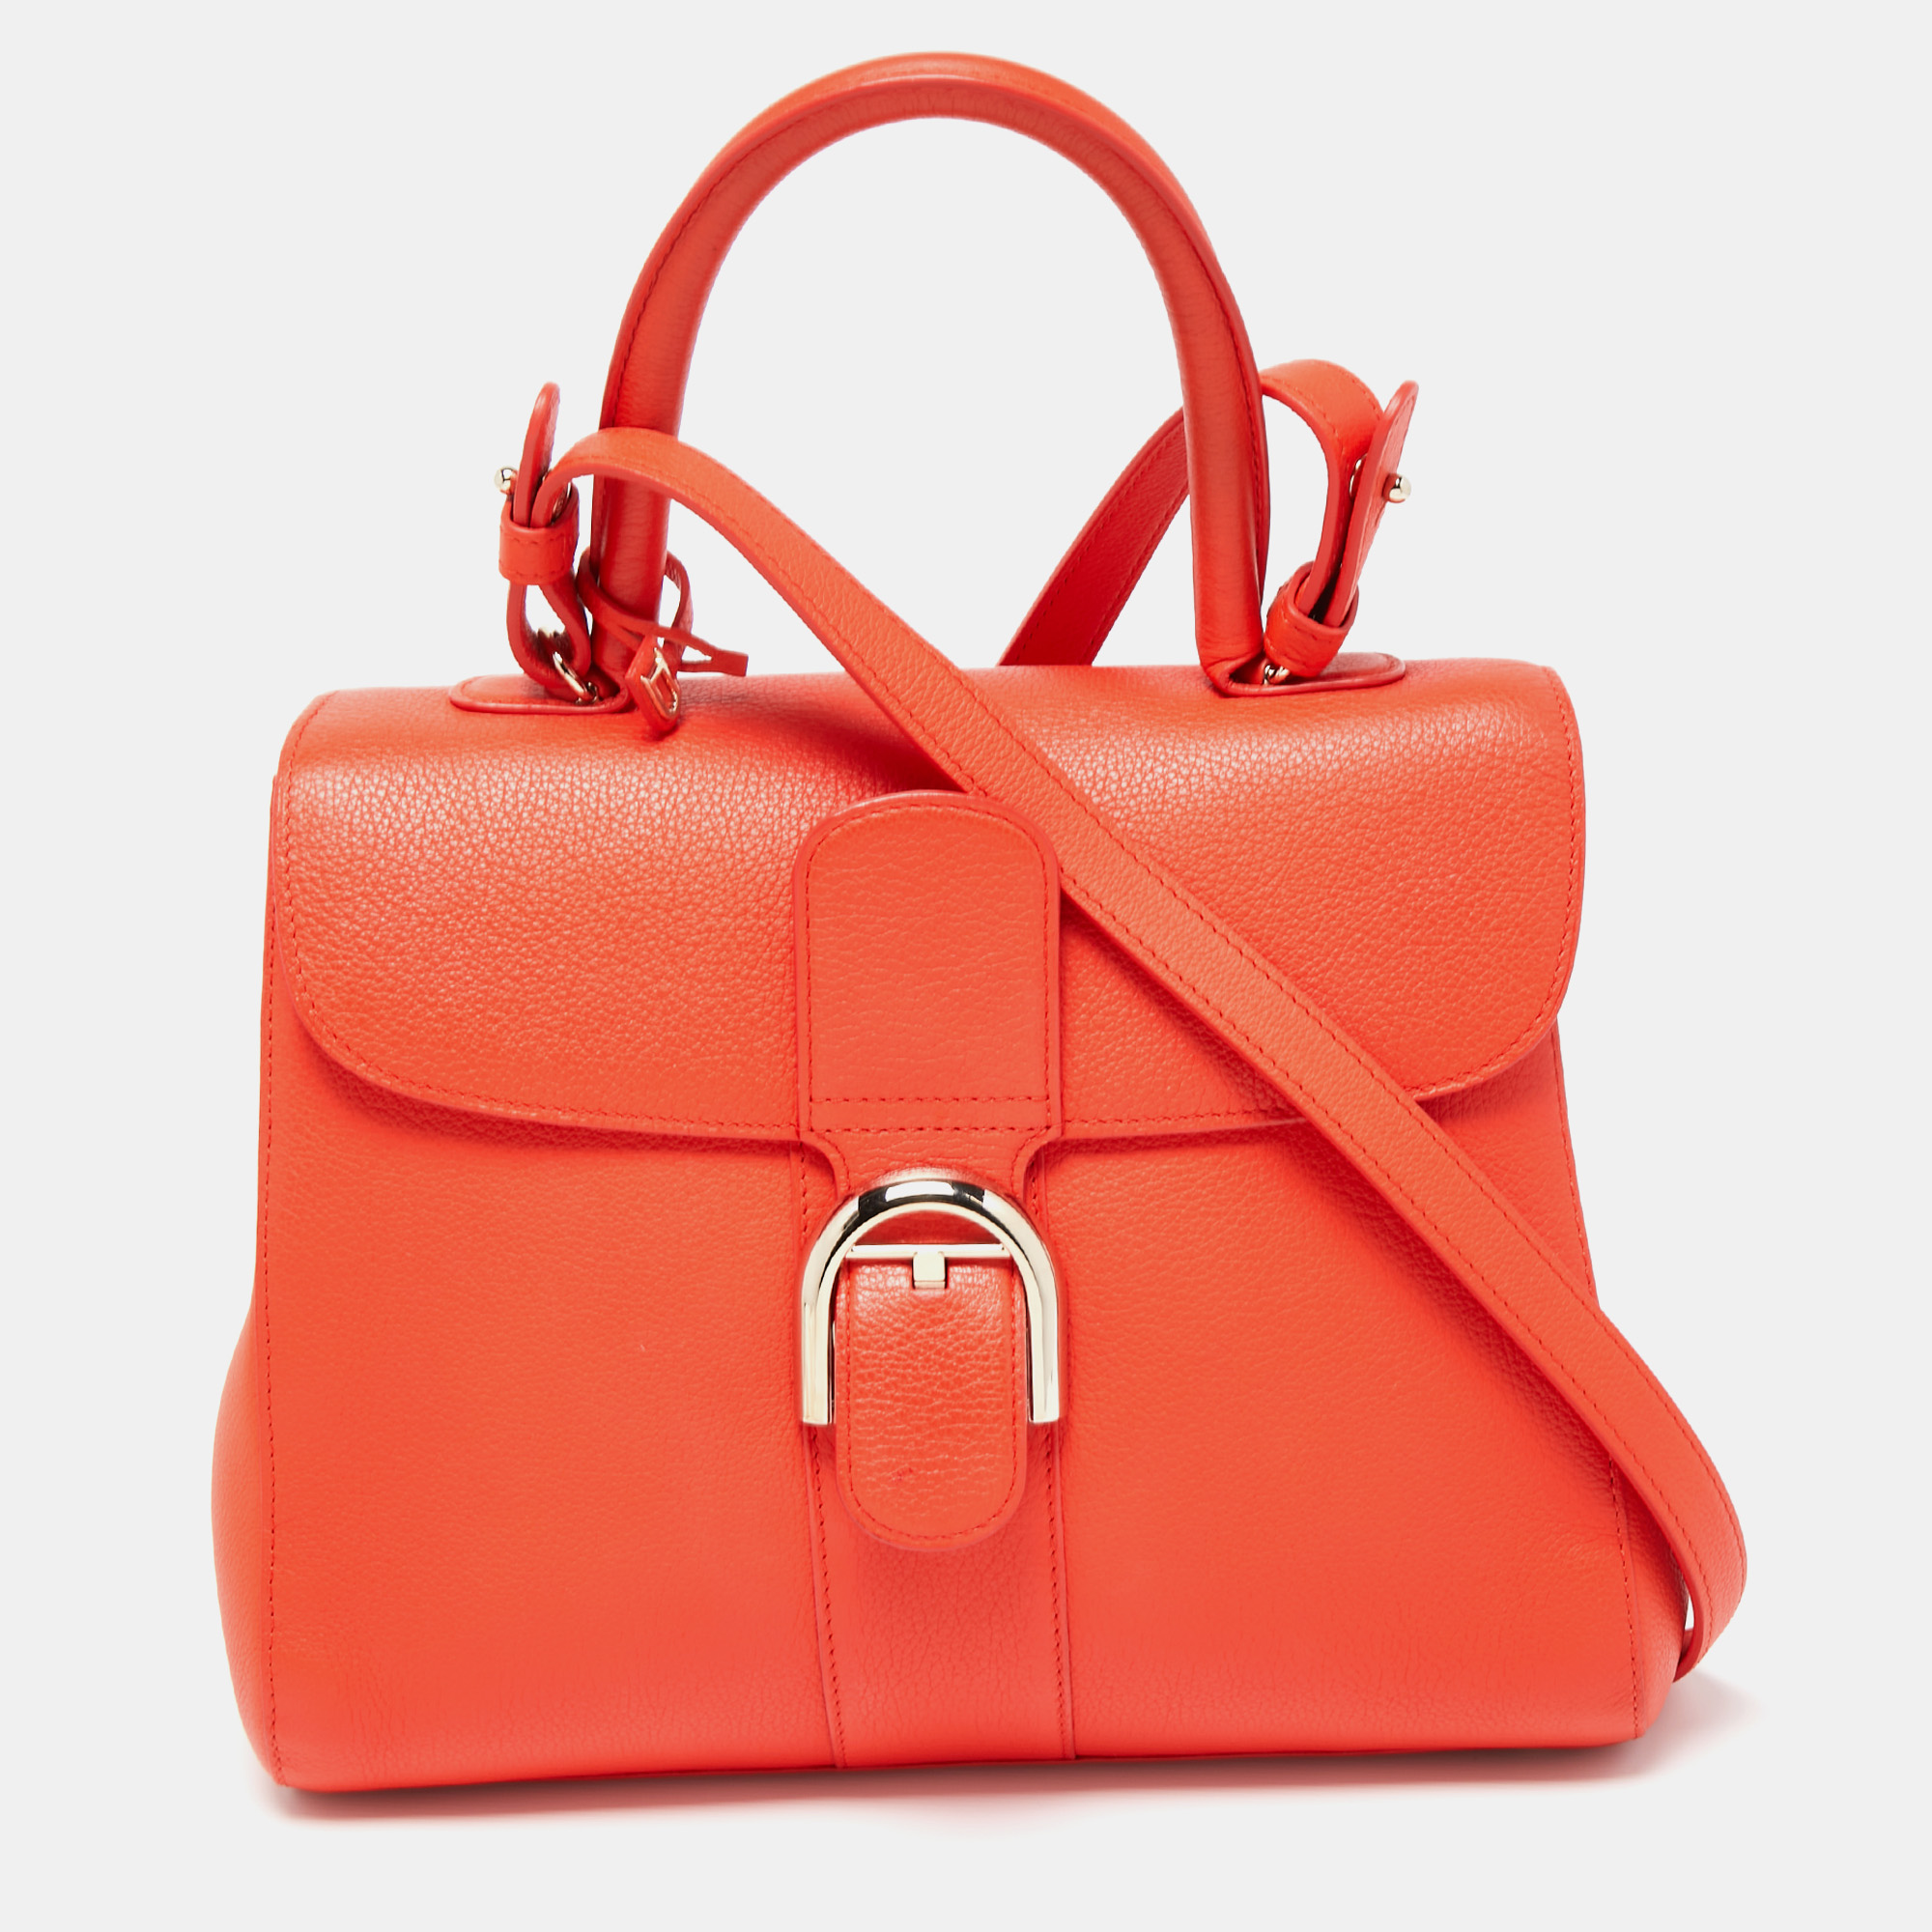 Delvaux Lé Brillant MM - Orange Handle Bags, Handbags - DVX22639